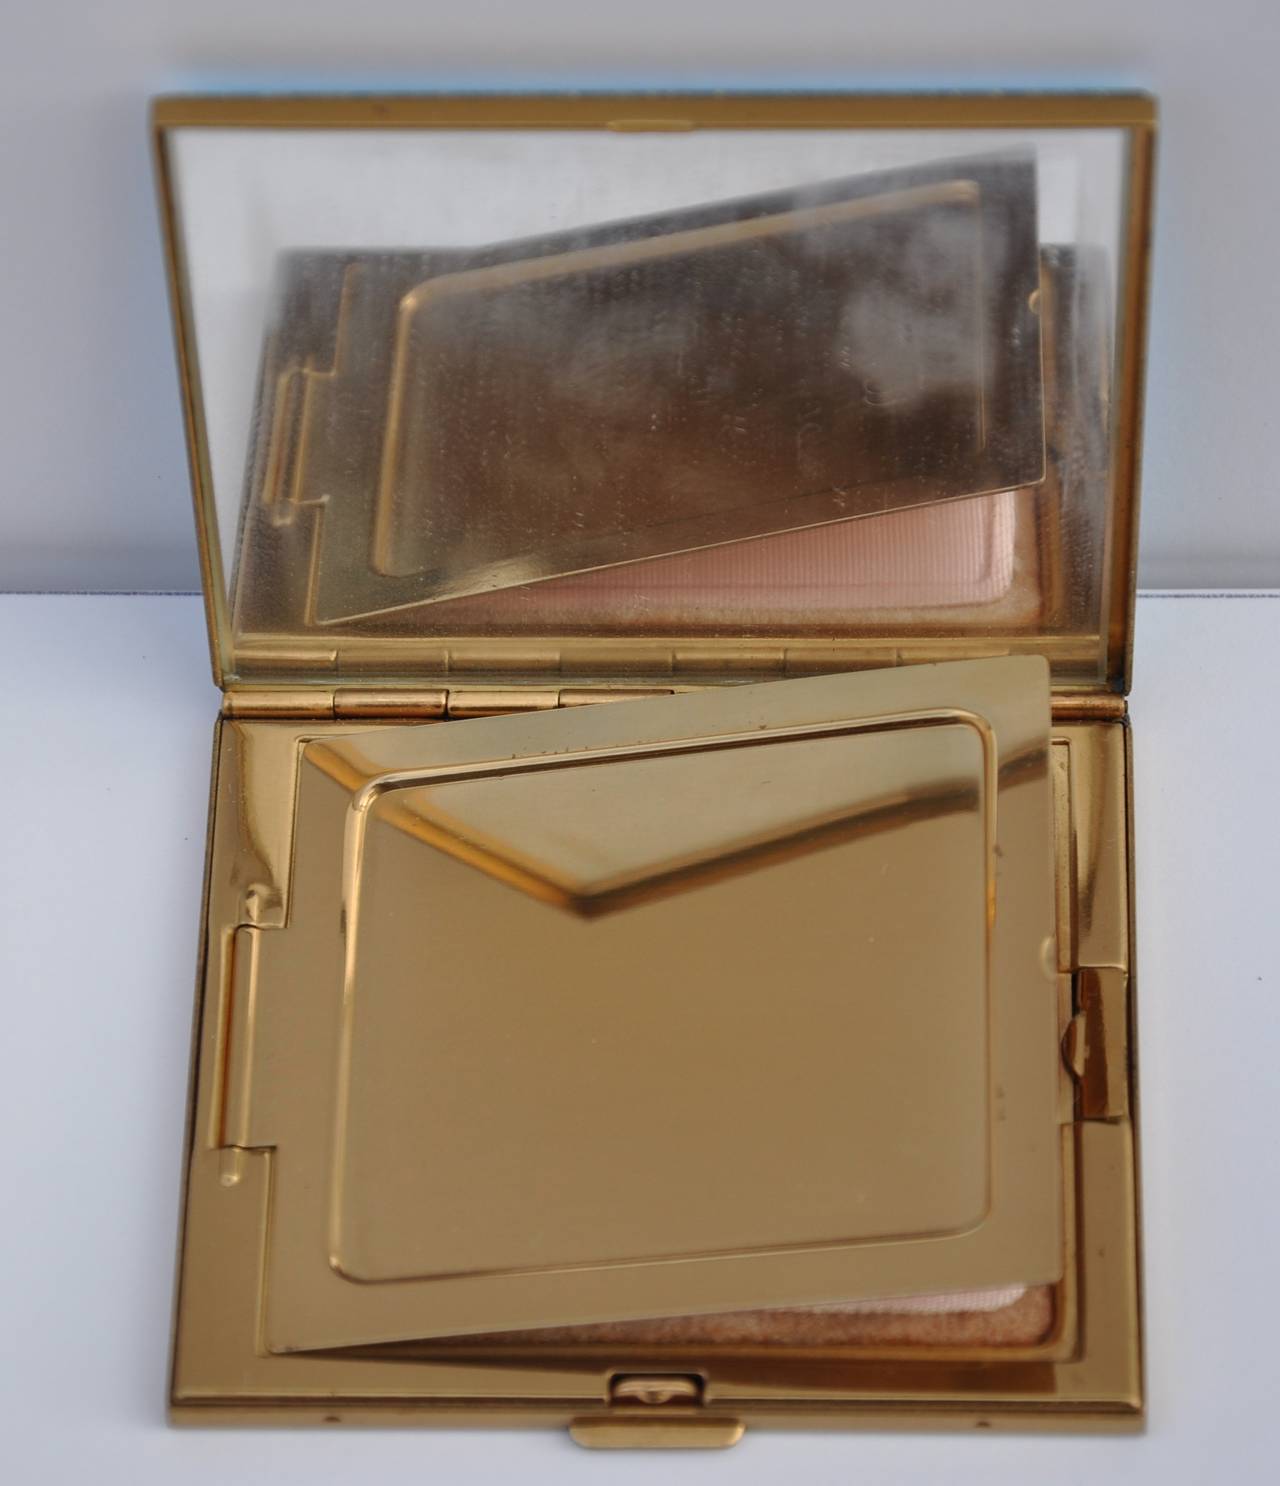 Diese wunderbar detaillierte Gold kompakt mit einem Multi-Color 